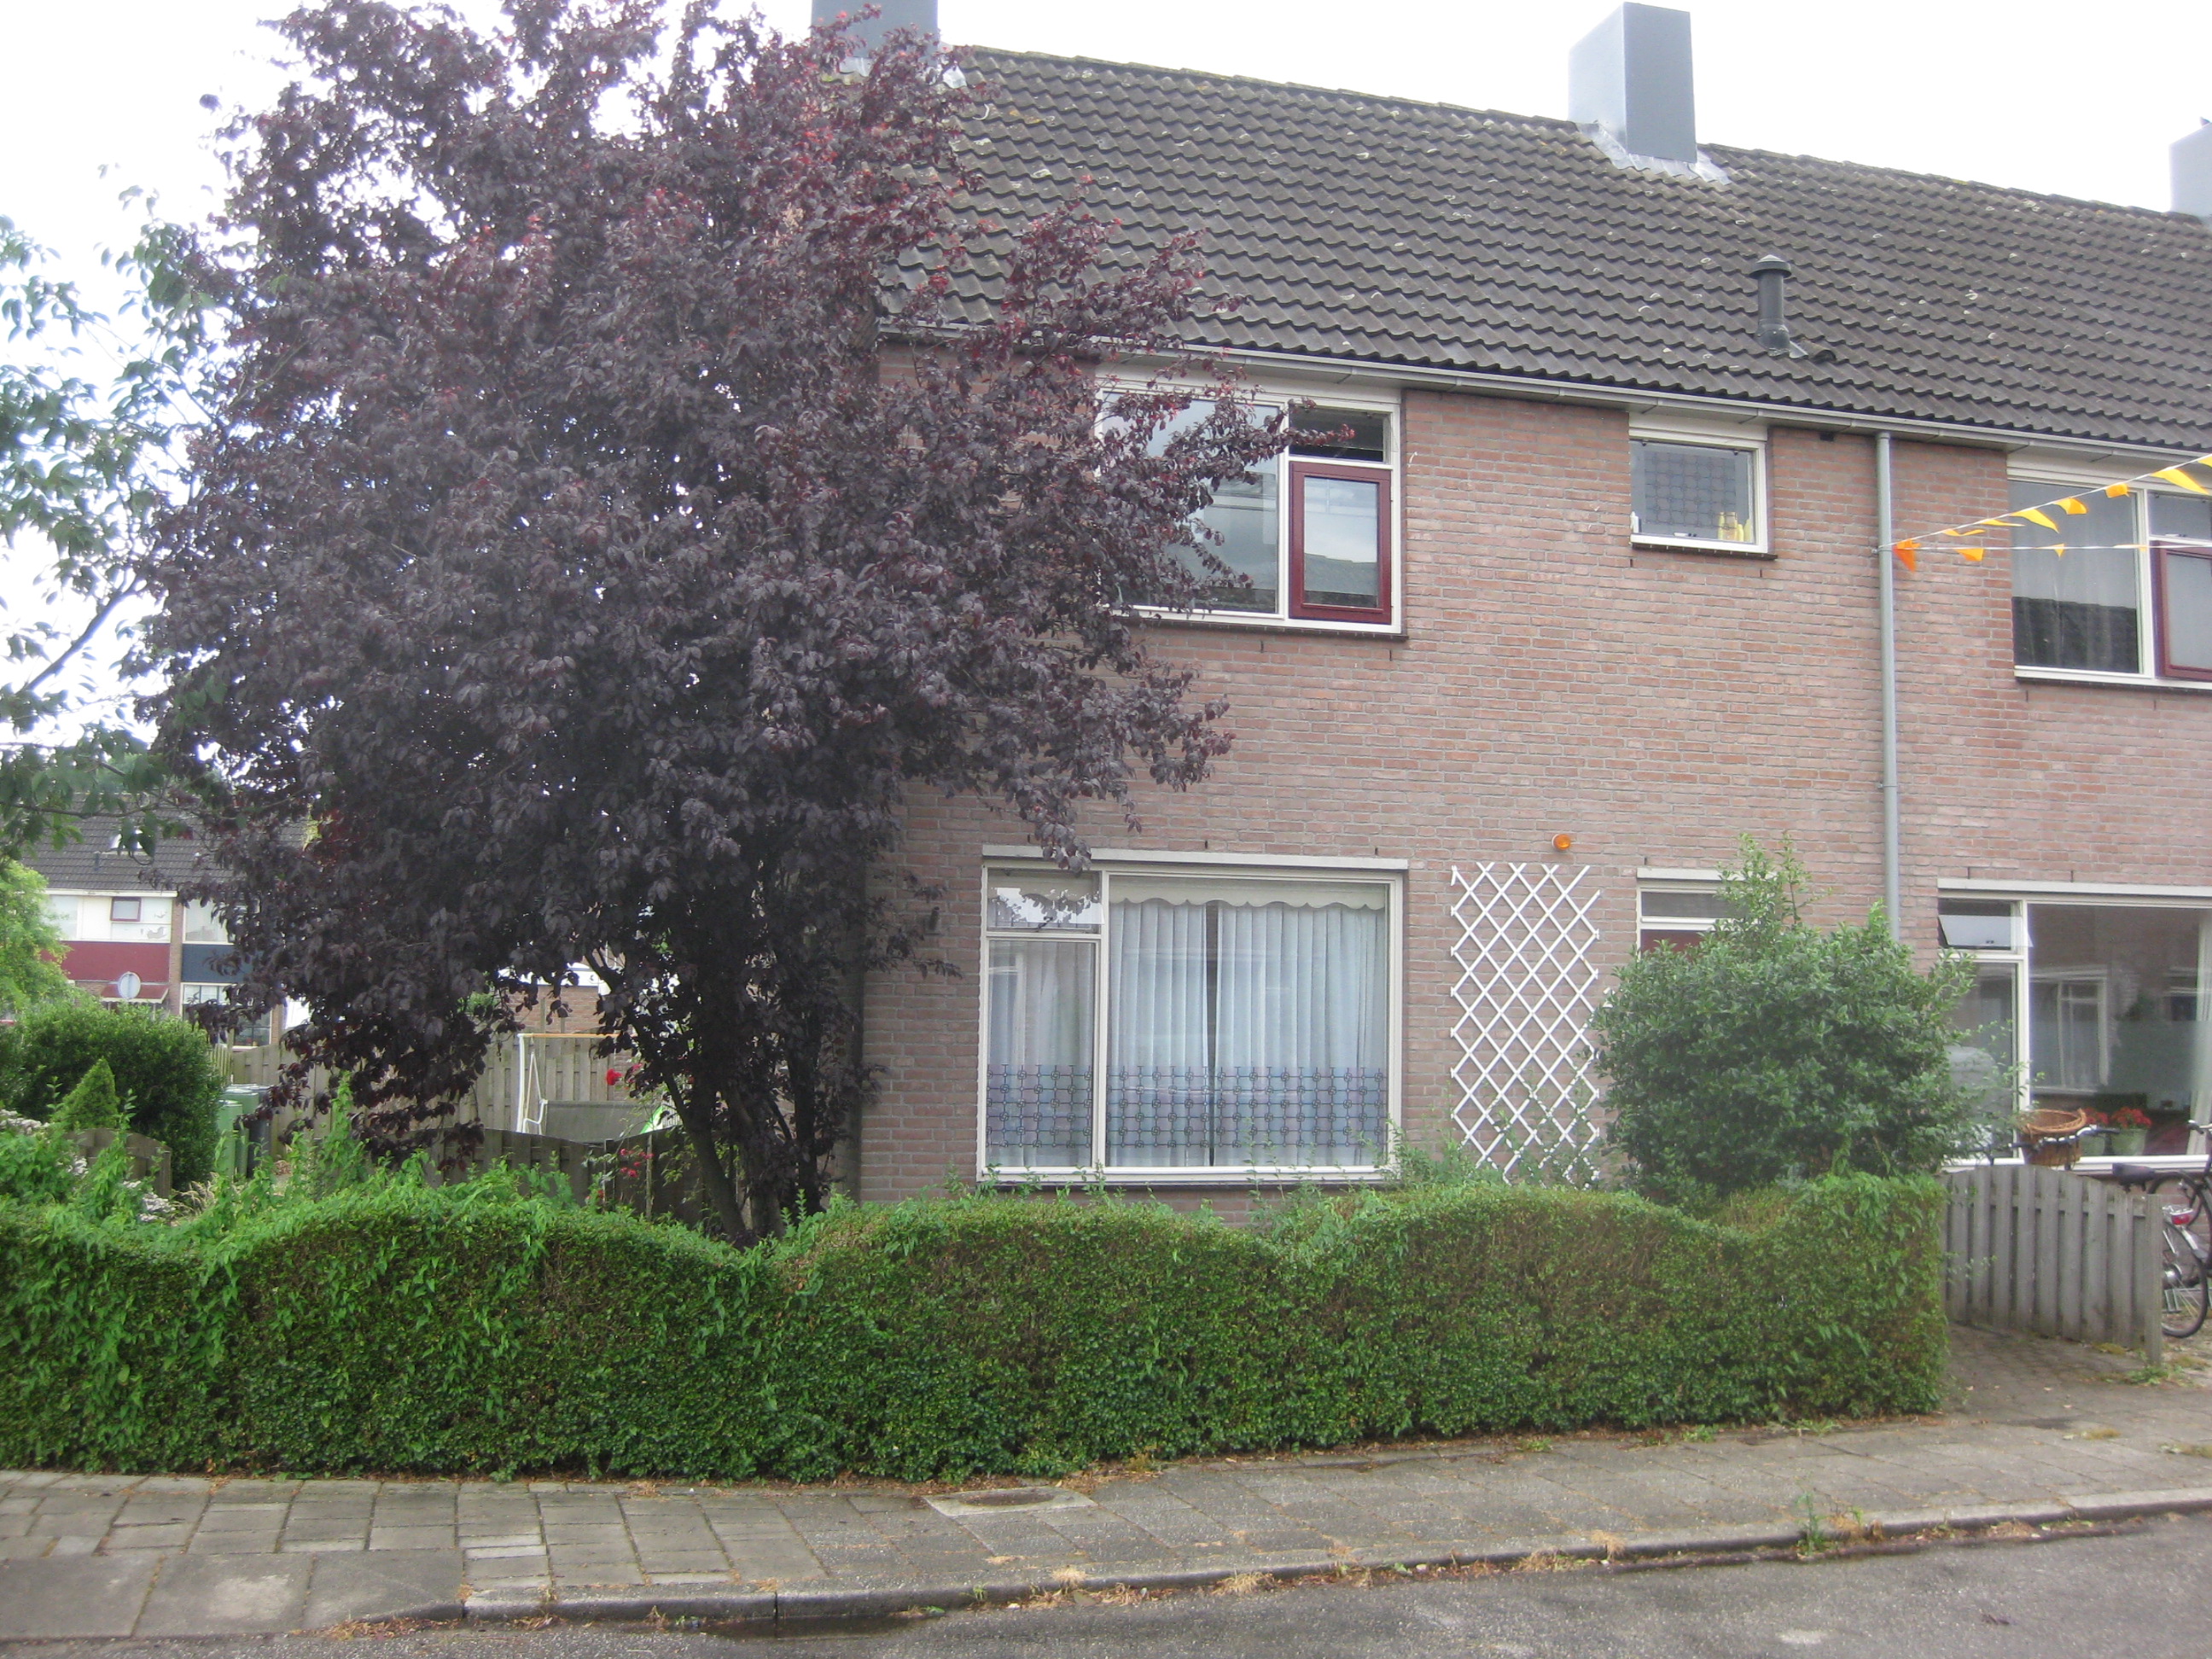 Lijsterbesstraat 21, 2371 TG Roelofarendsveen, Nederland